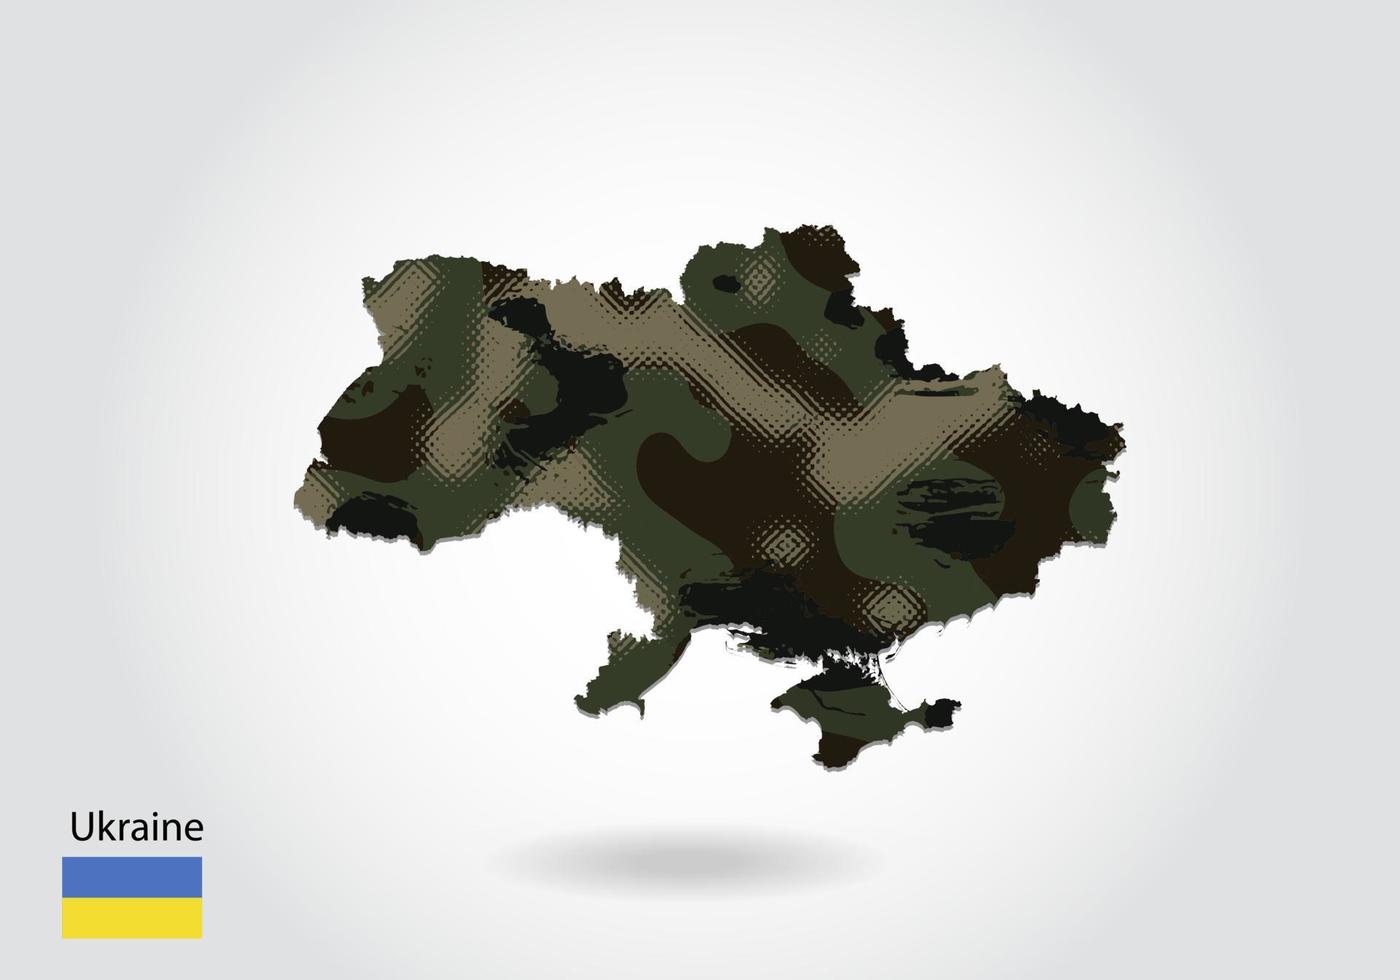 mapa de ucrania con patrón de camuflaje, bosque - textura verde en el mapa. concepto militar para ejército, soldado y guerra. escudo de armas, bandera. vector